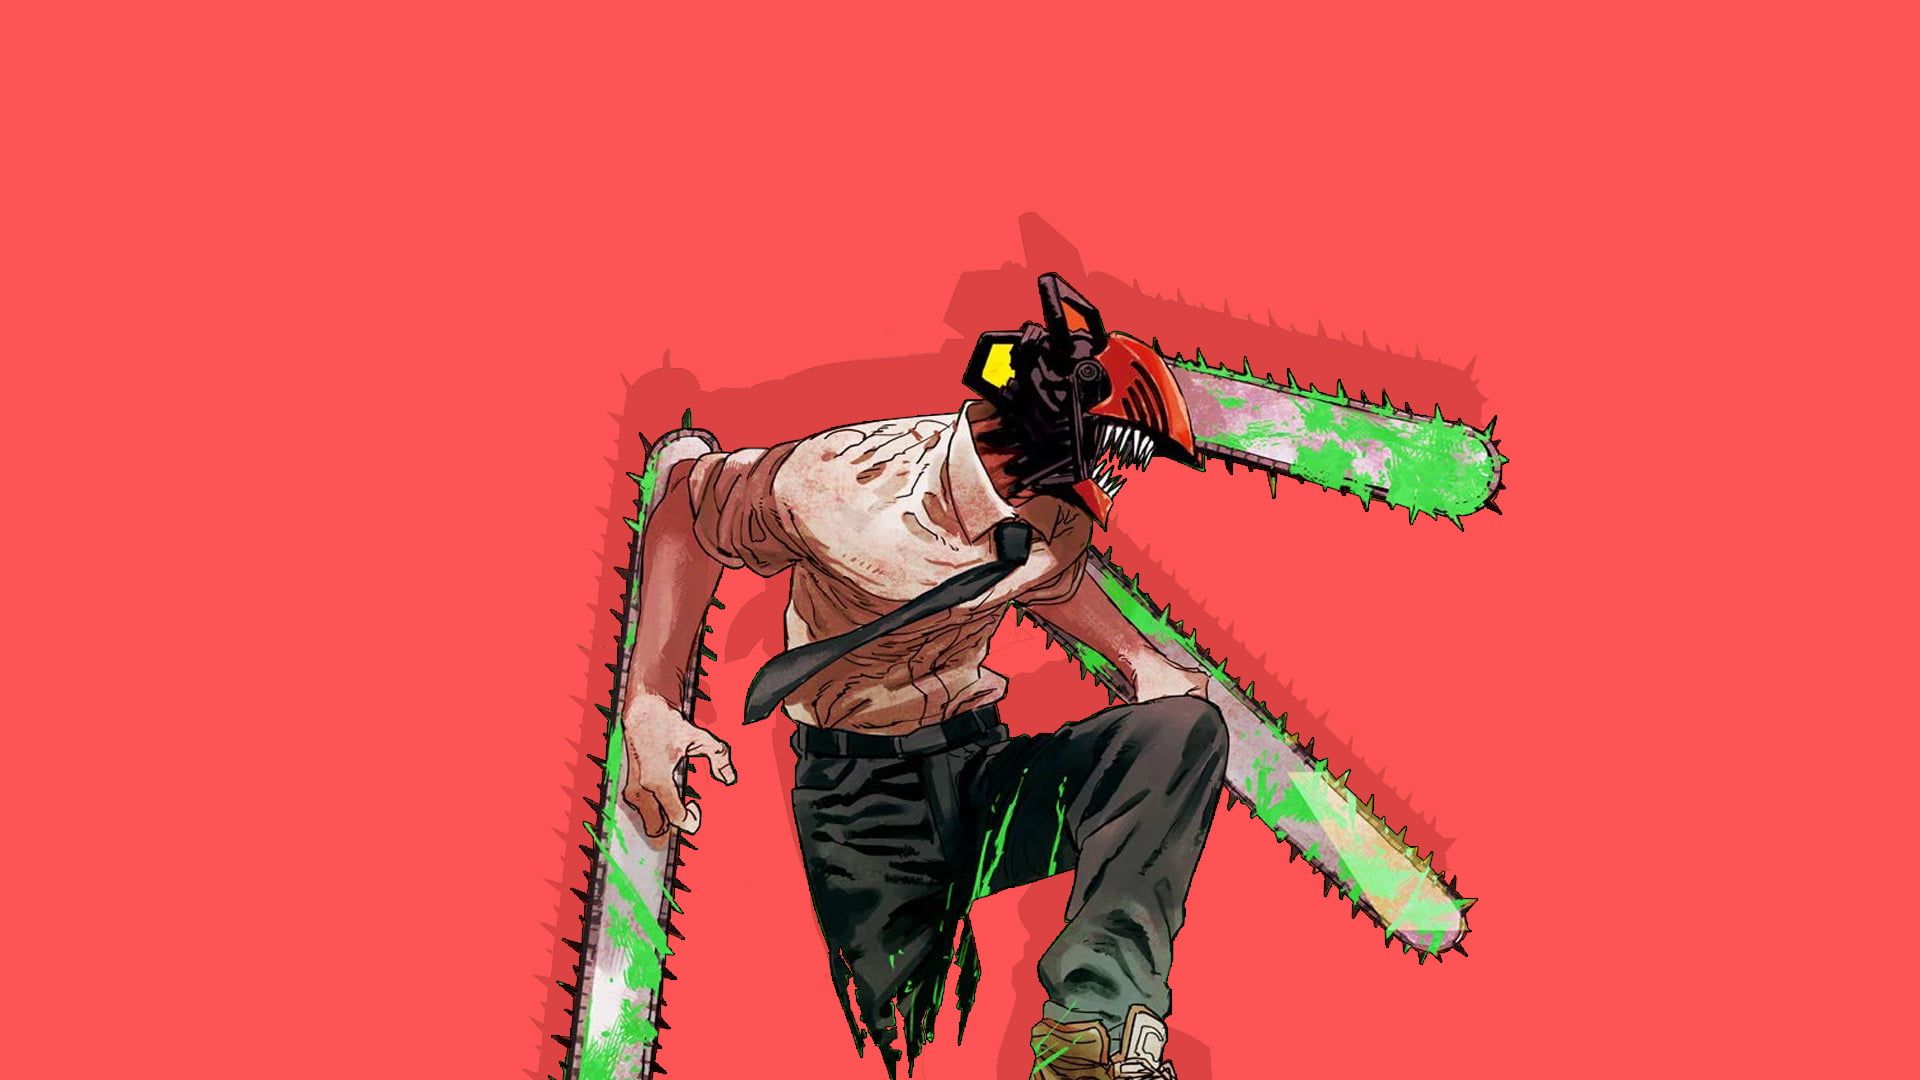 Chainsaw Man #anime P #wallpaper #hdwallpaper #desktop. Character wallpaper, Anime, Chainsaw